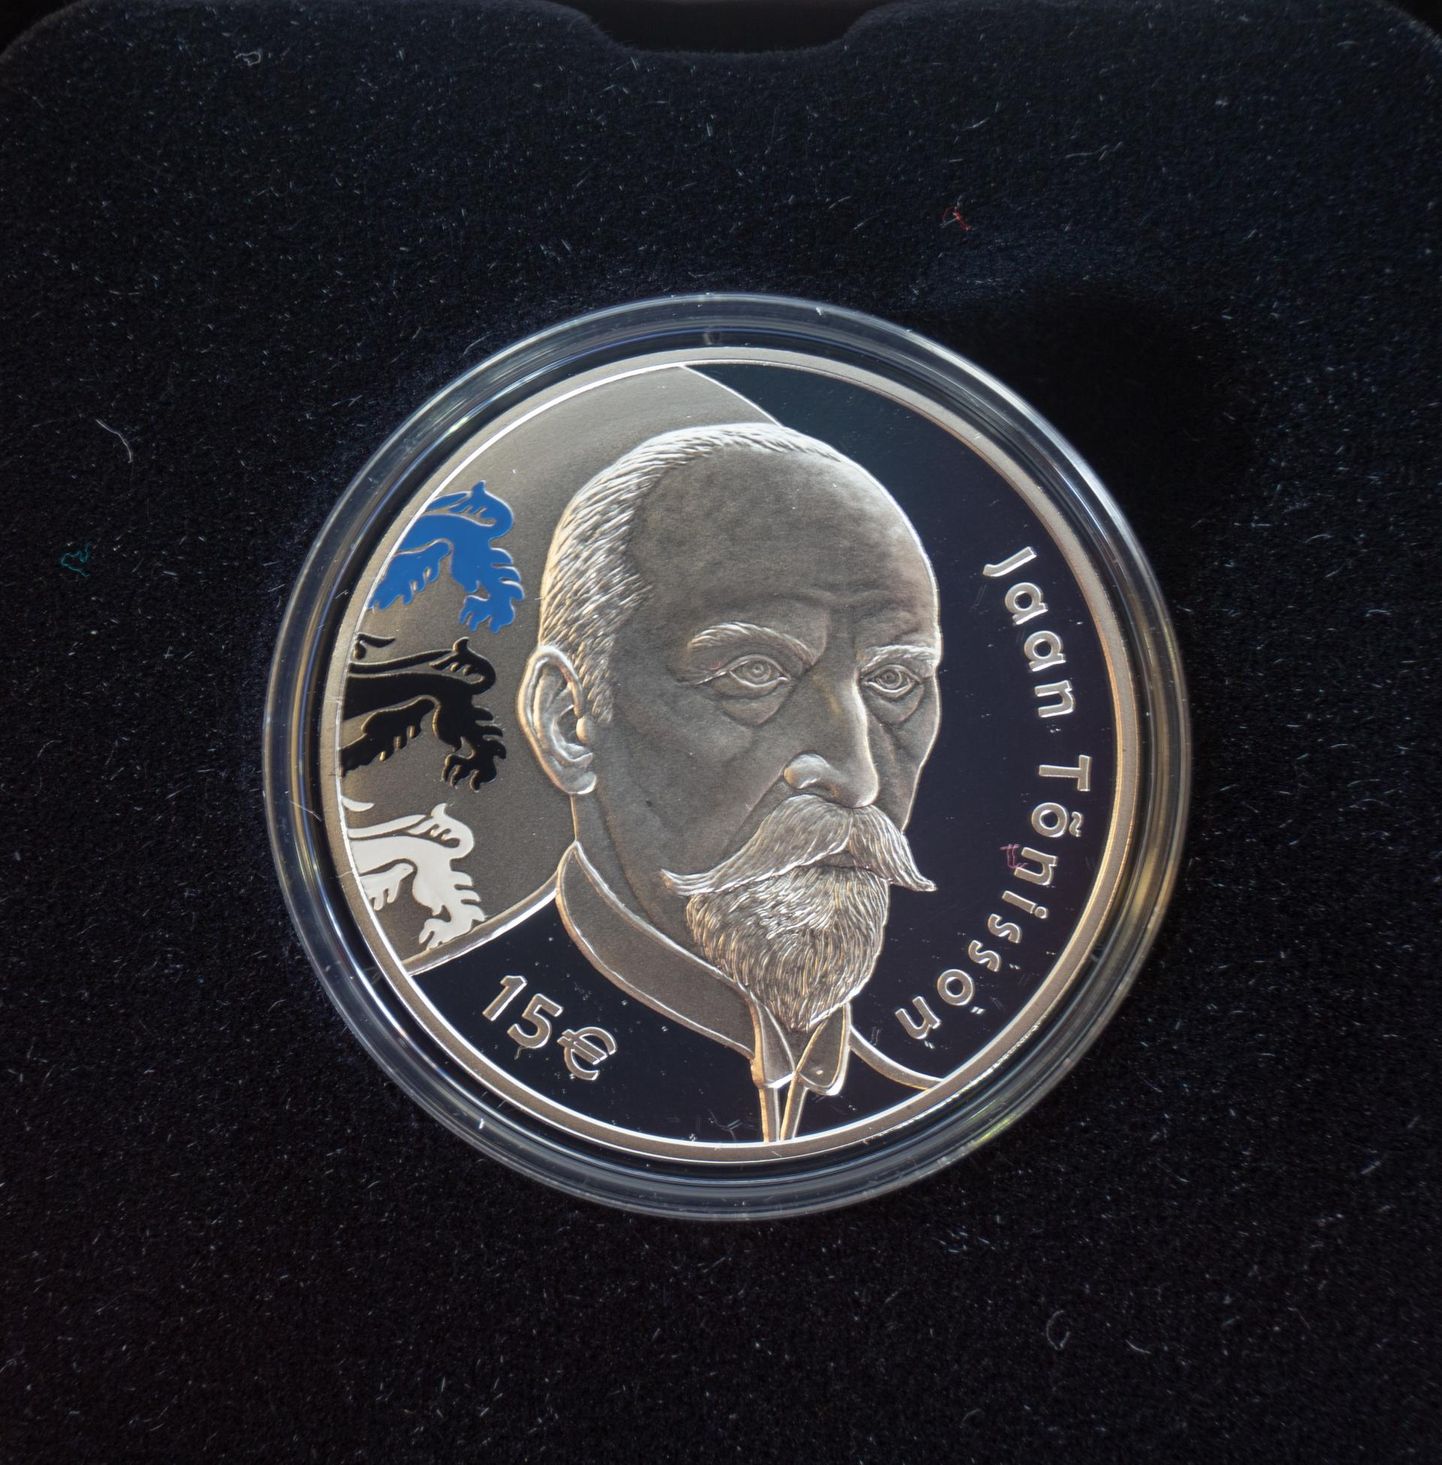 See on Jaan Tõnissoni 150. sünnipäeva puhul välja antud juubelimünt. Nüüd jõuab tema portree ka mälestustahvlile.